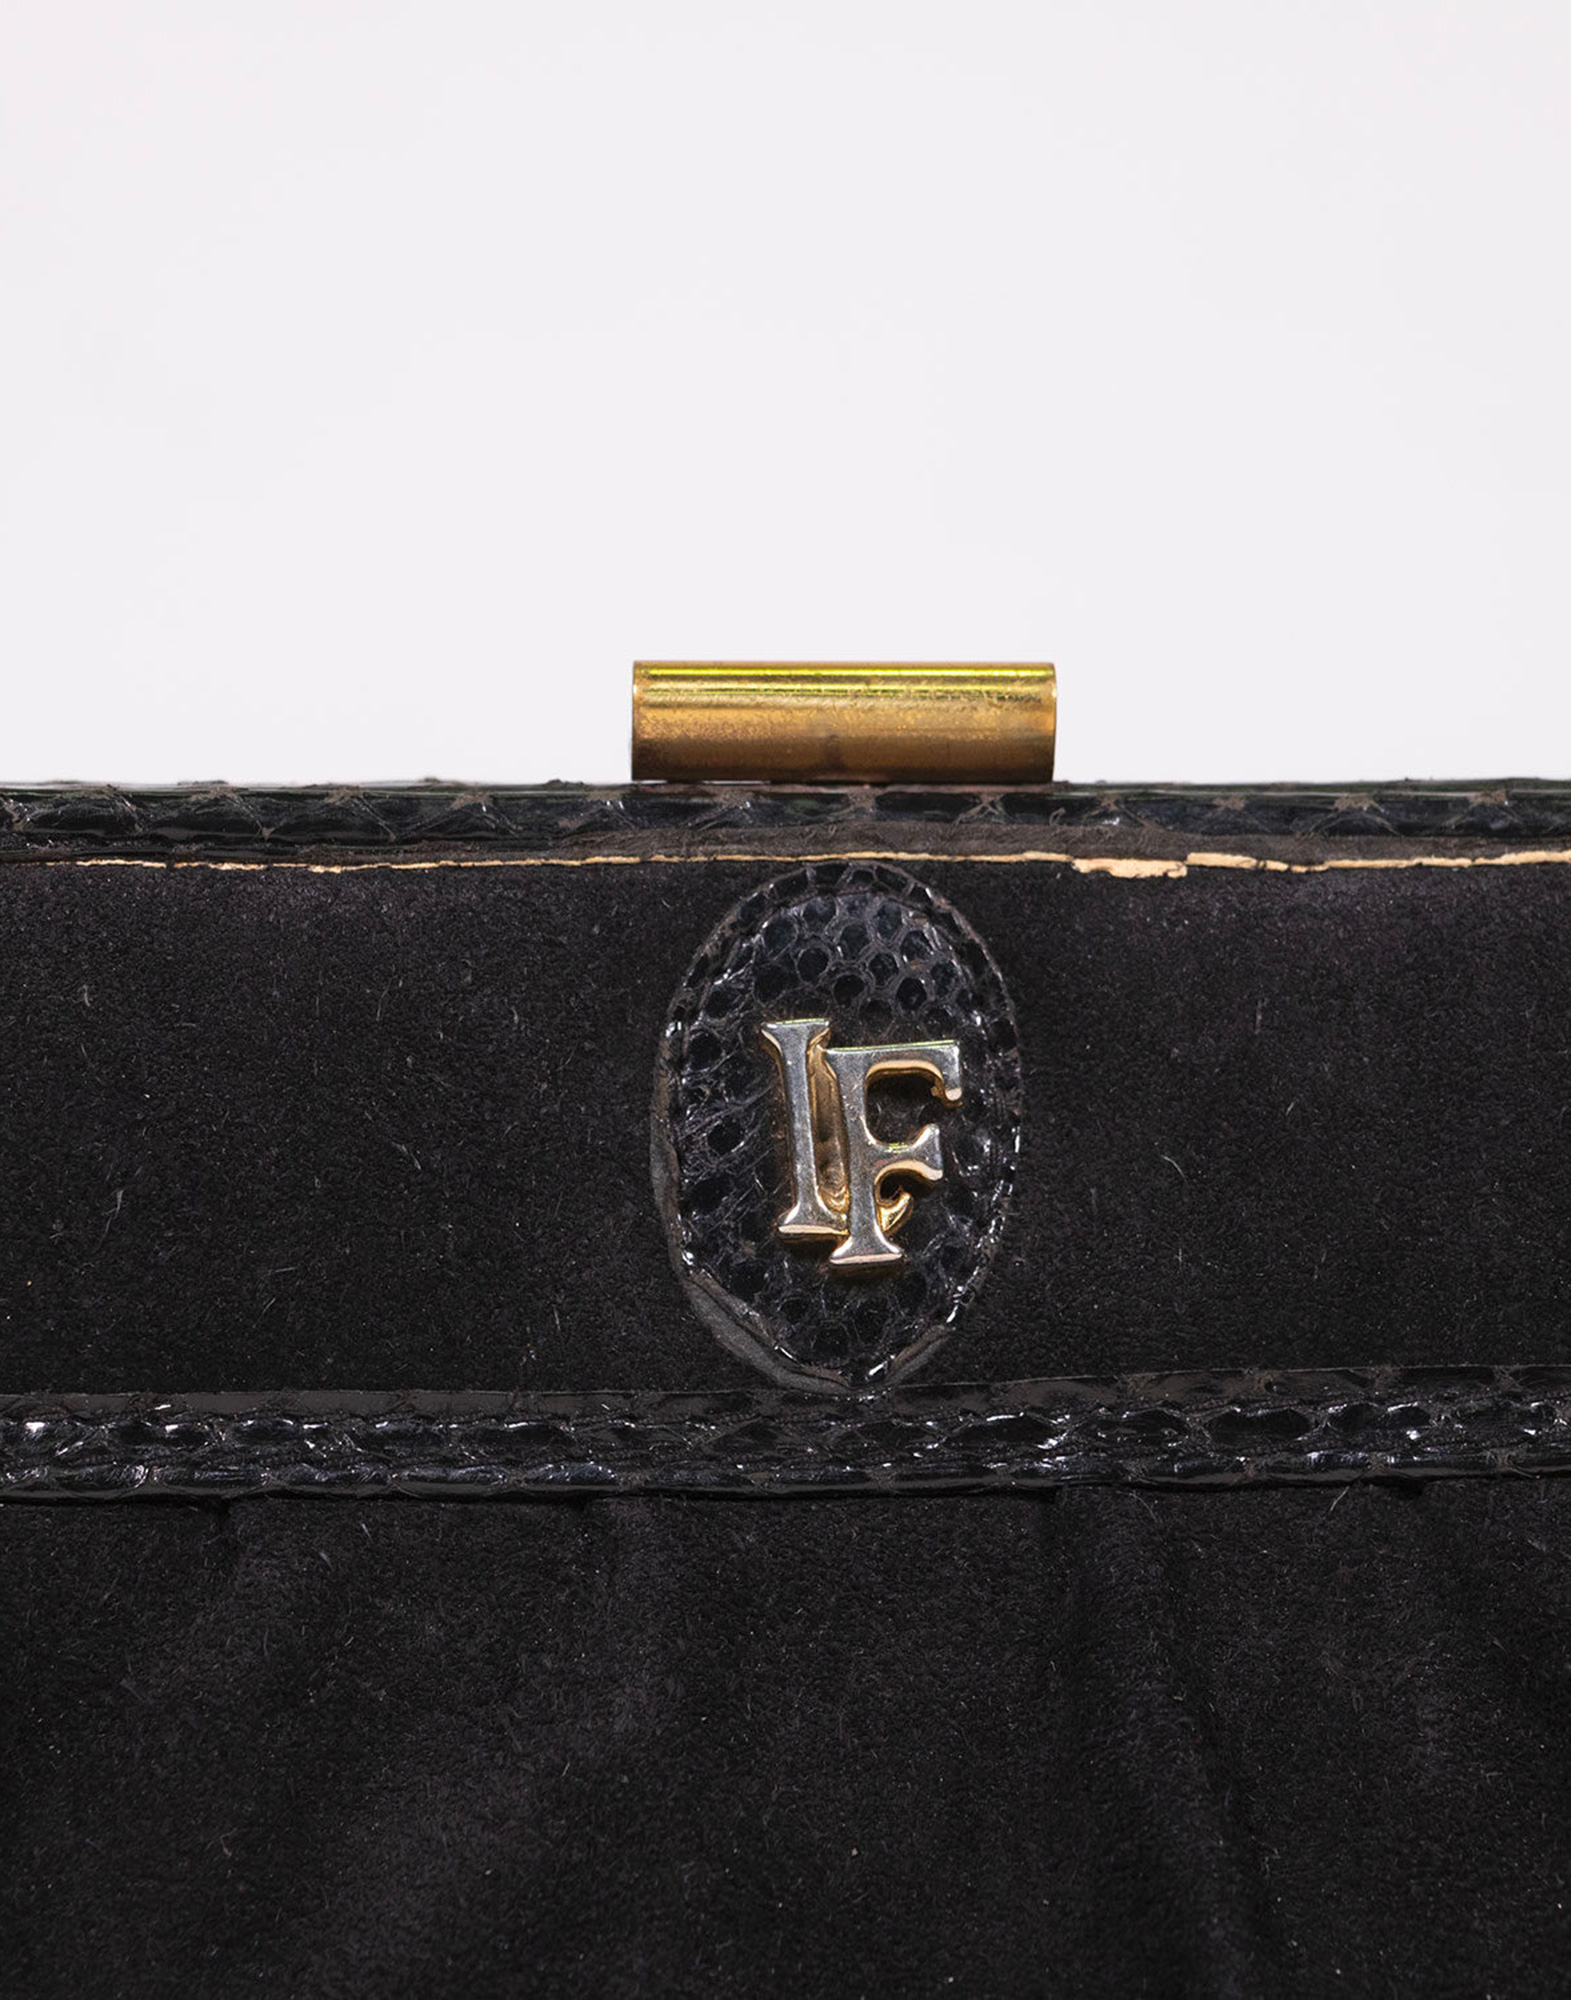 Vintage Louis Feraud Paris Clutch Bag/leather Purse/80s 